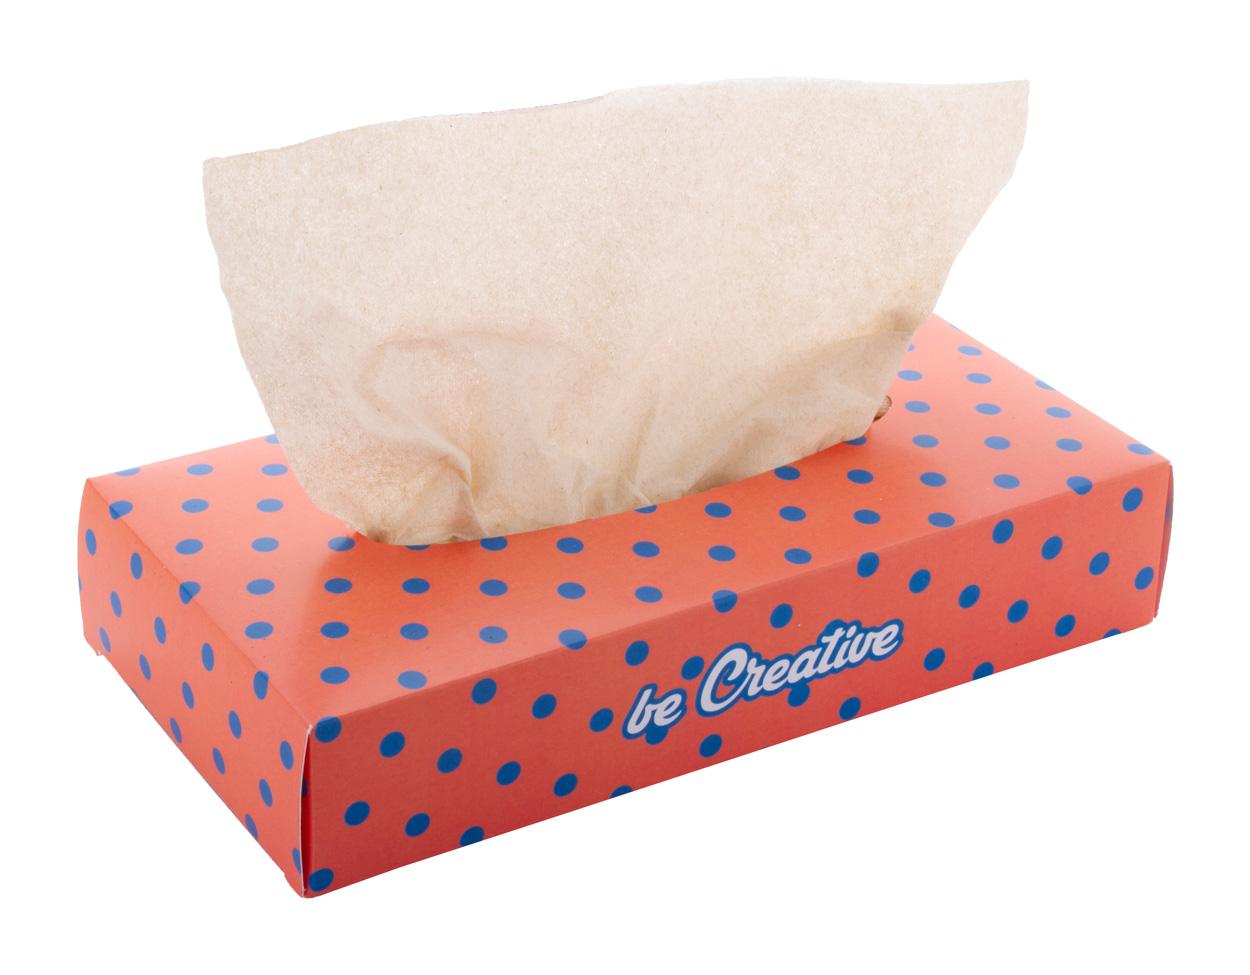 Promo  CreaSneeze custom paper tissues